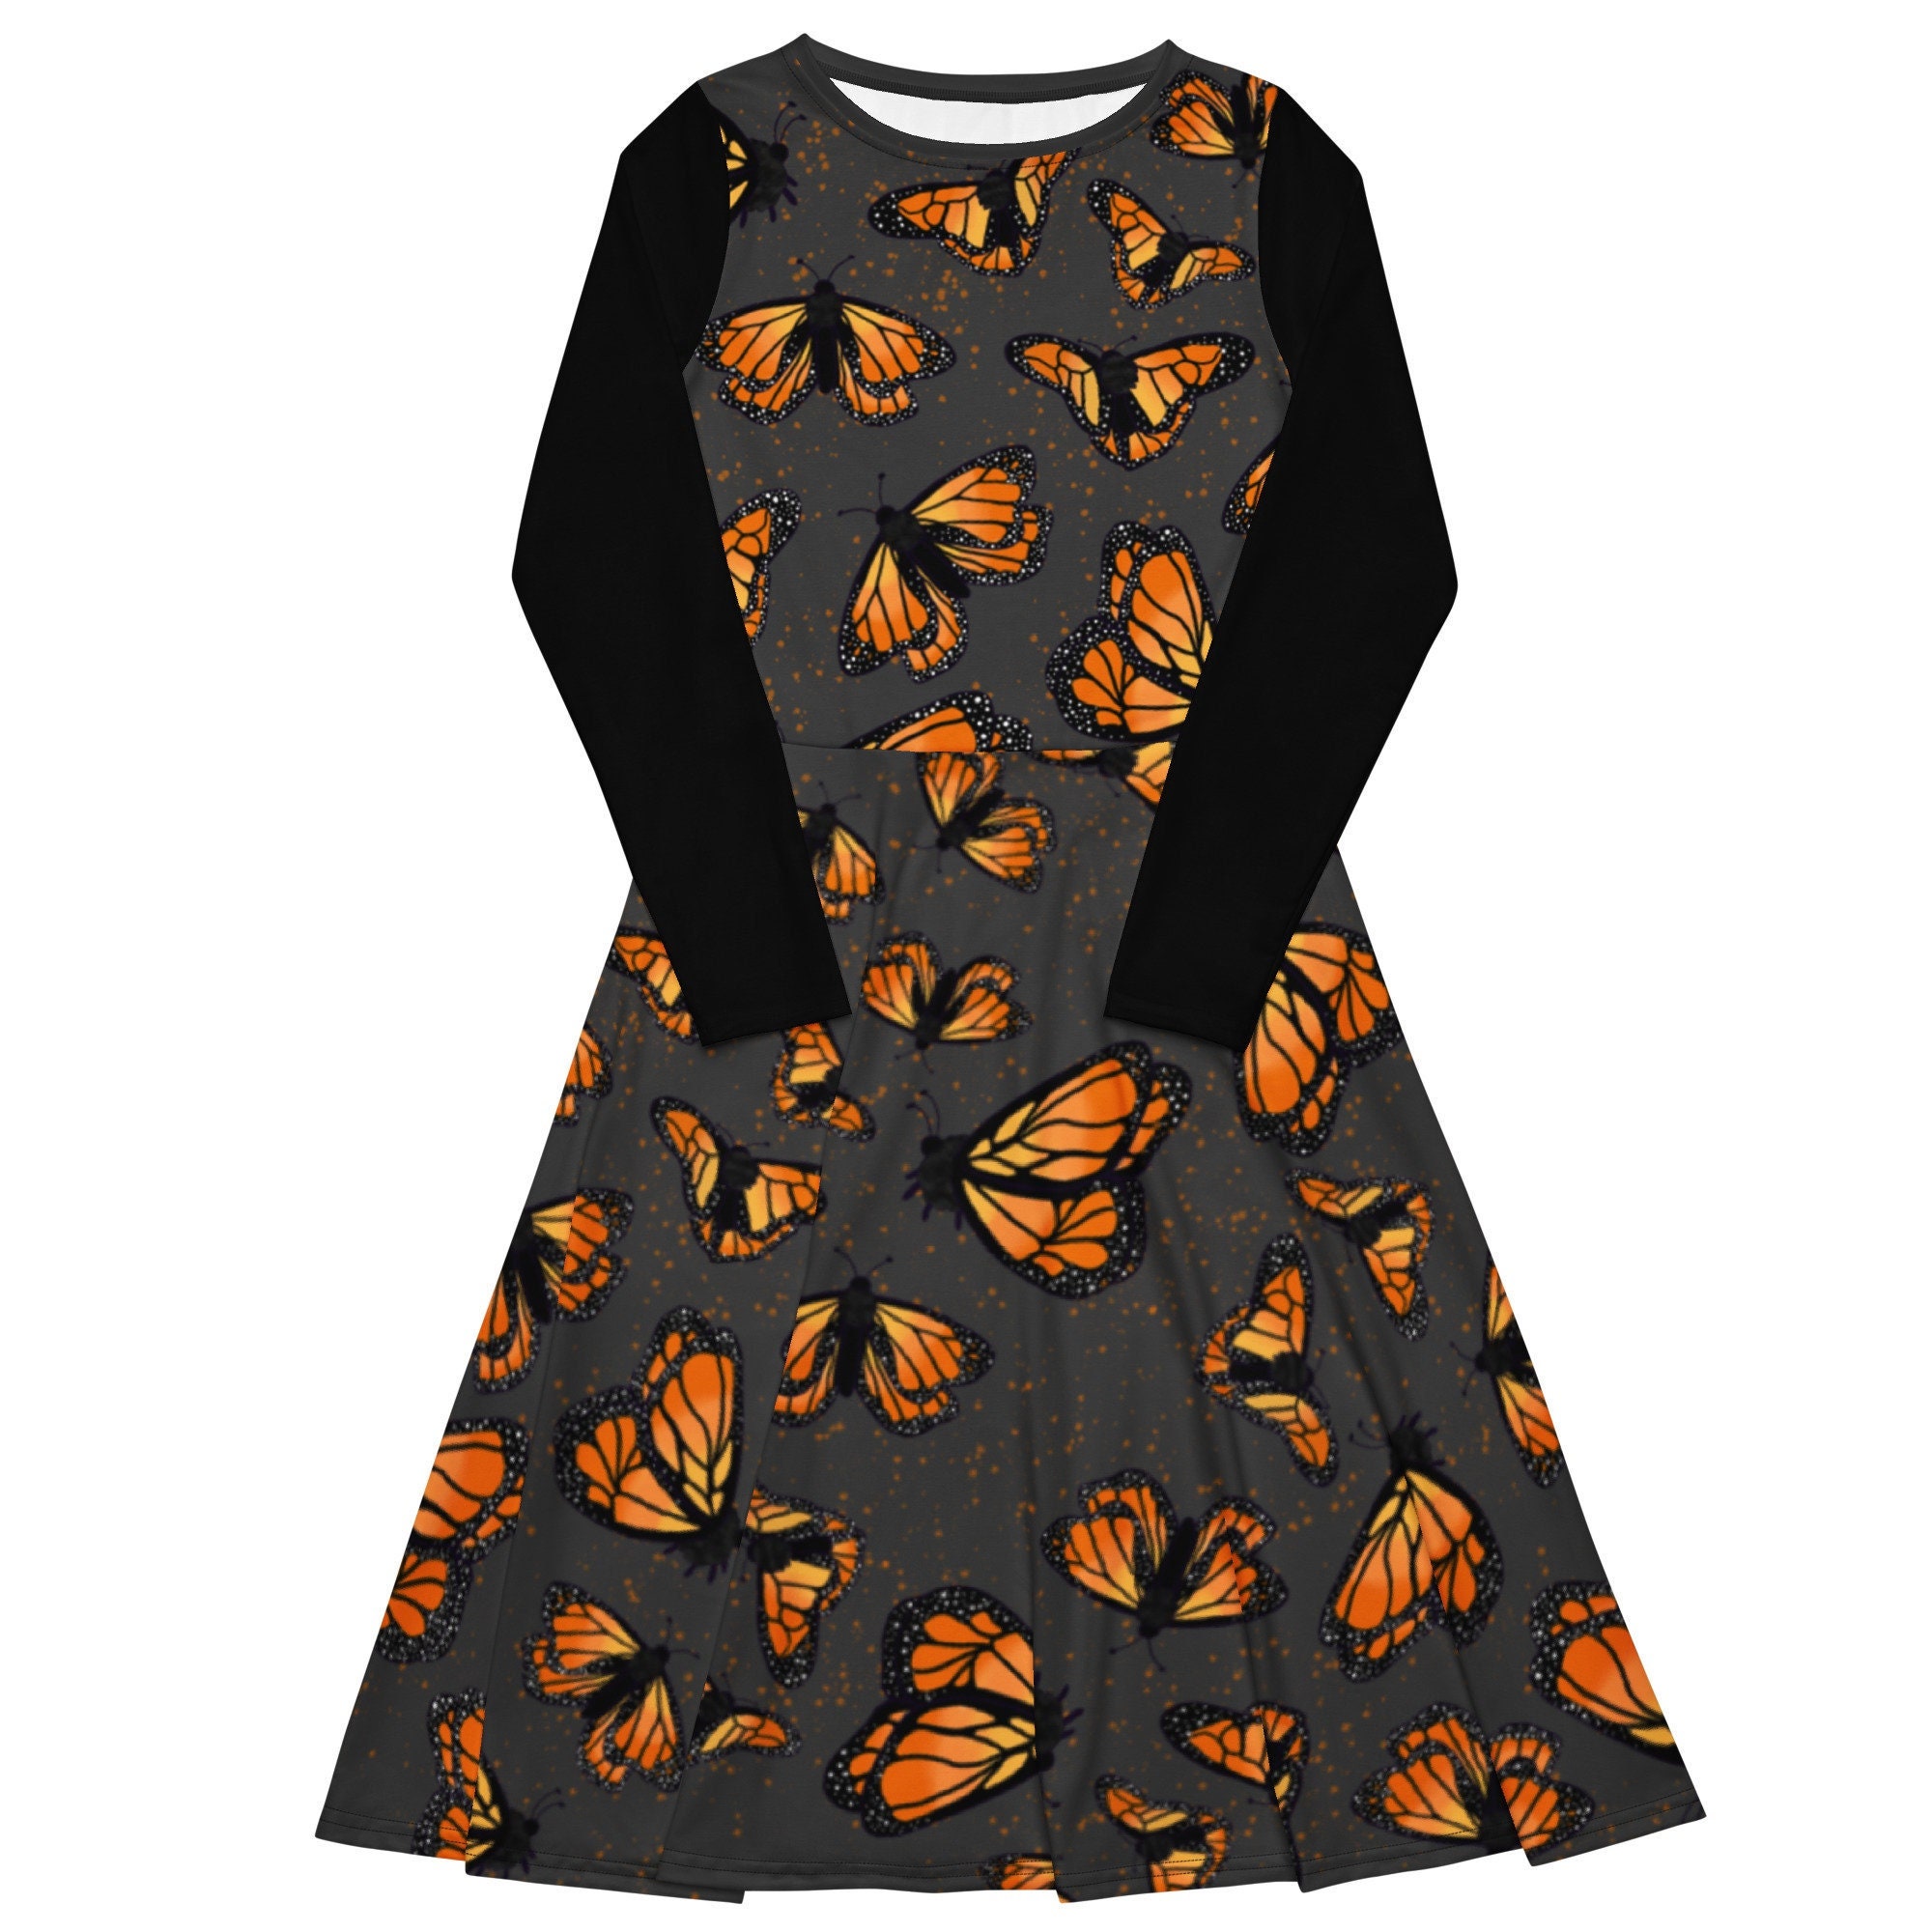 ZLBDYG Women's Floral Printed Elastic Waist A Line Maxi Skirt Women Short Sleeve Top Butterfly Print Dress Suit Dress 